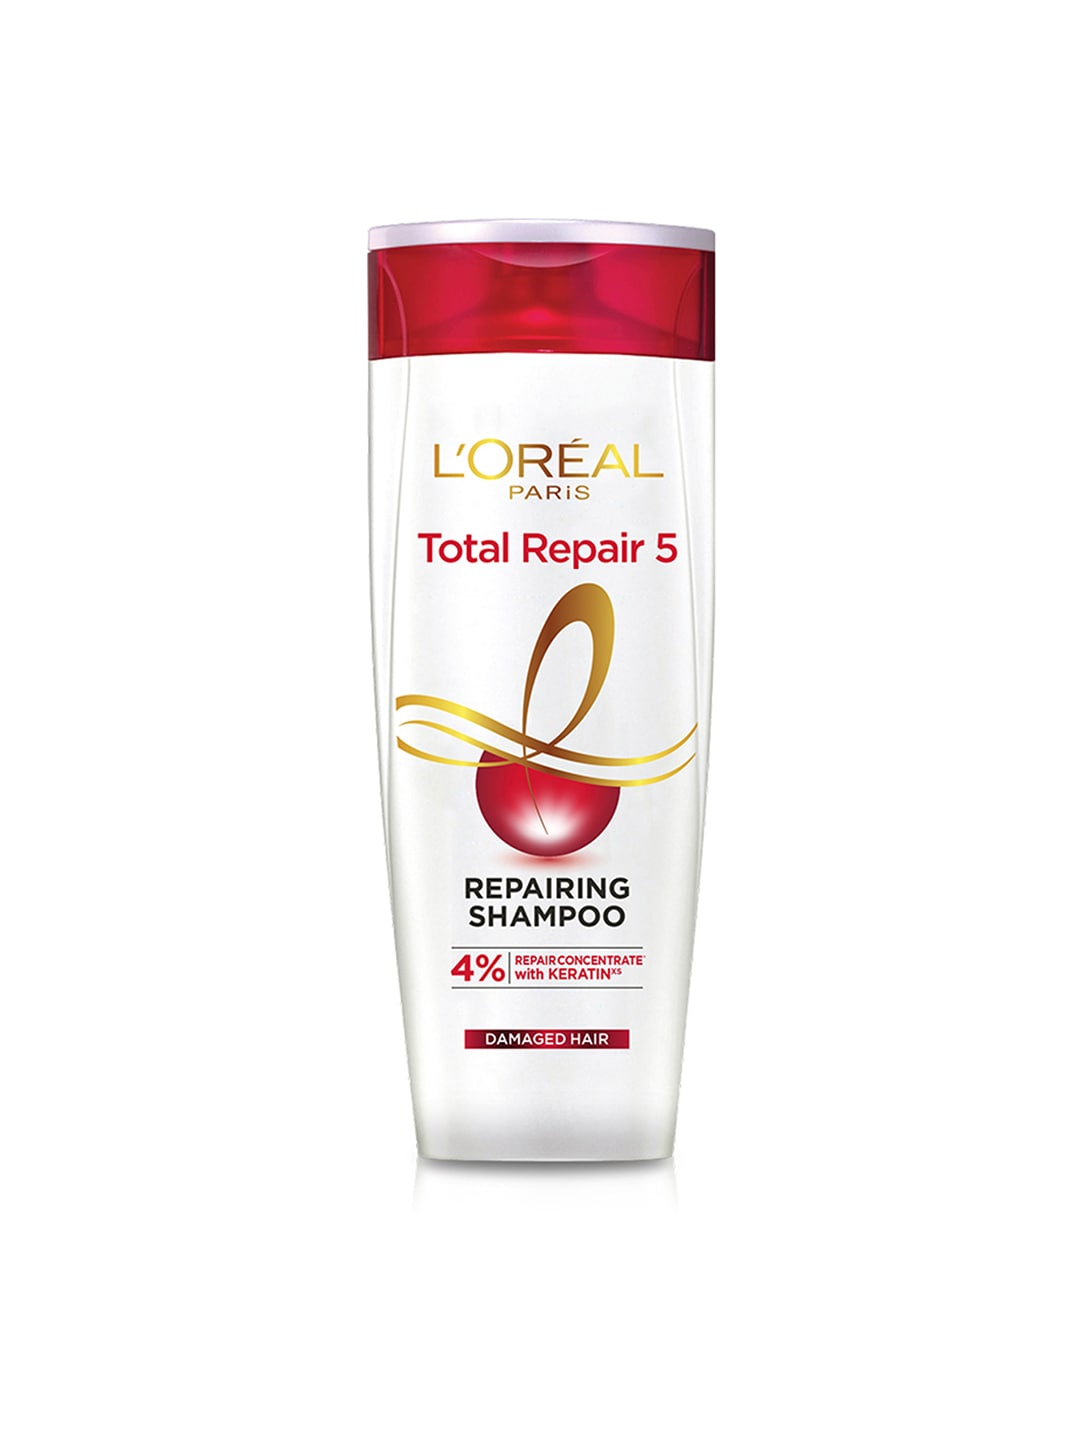 LOreal Paris Total Repair 5 Shampoo, 192.5ml - 192.5 ml Price in India